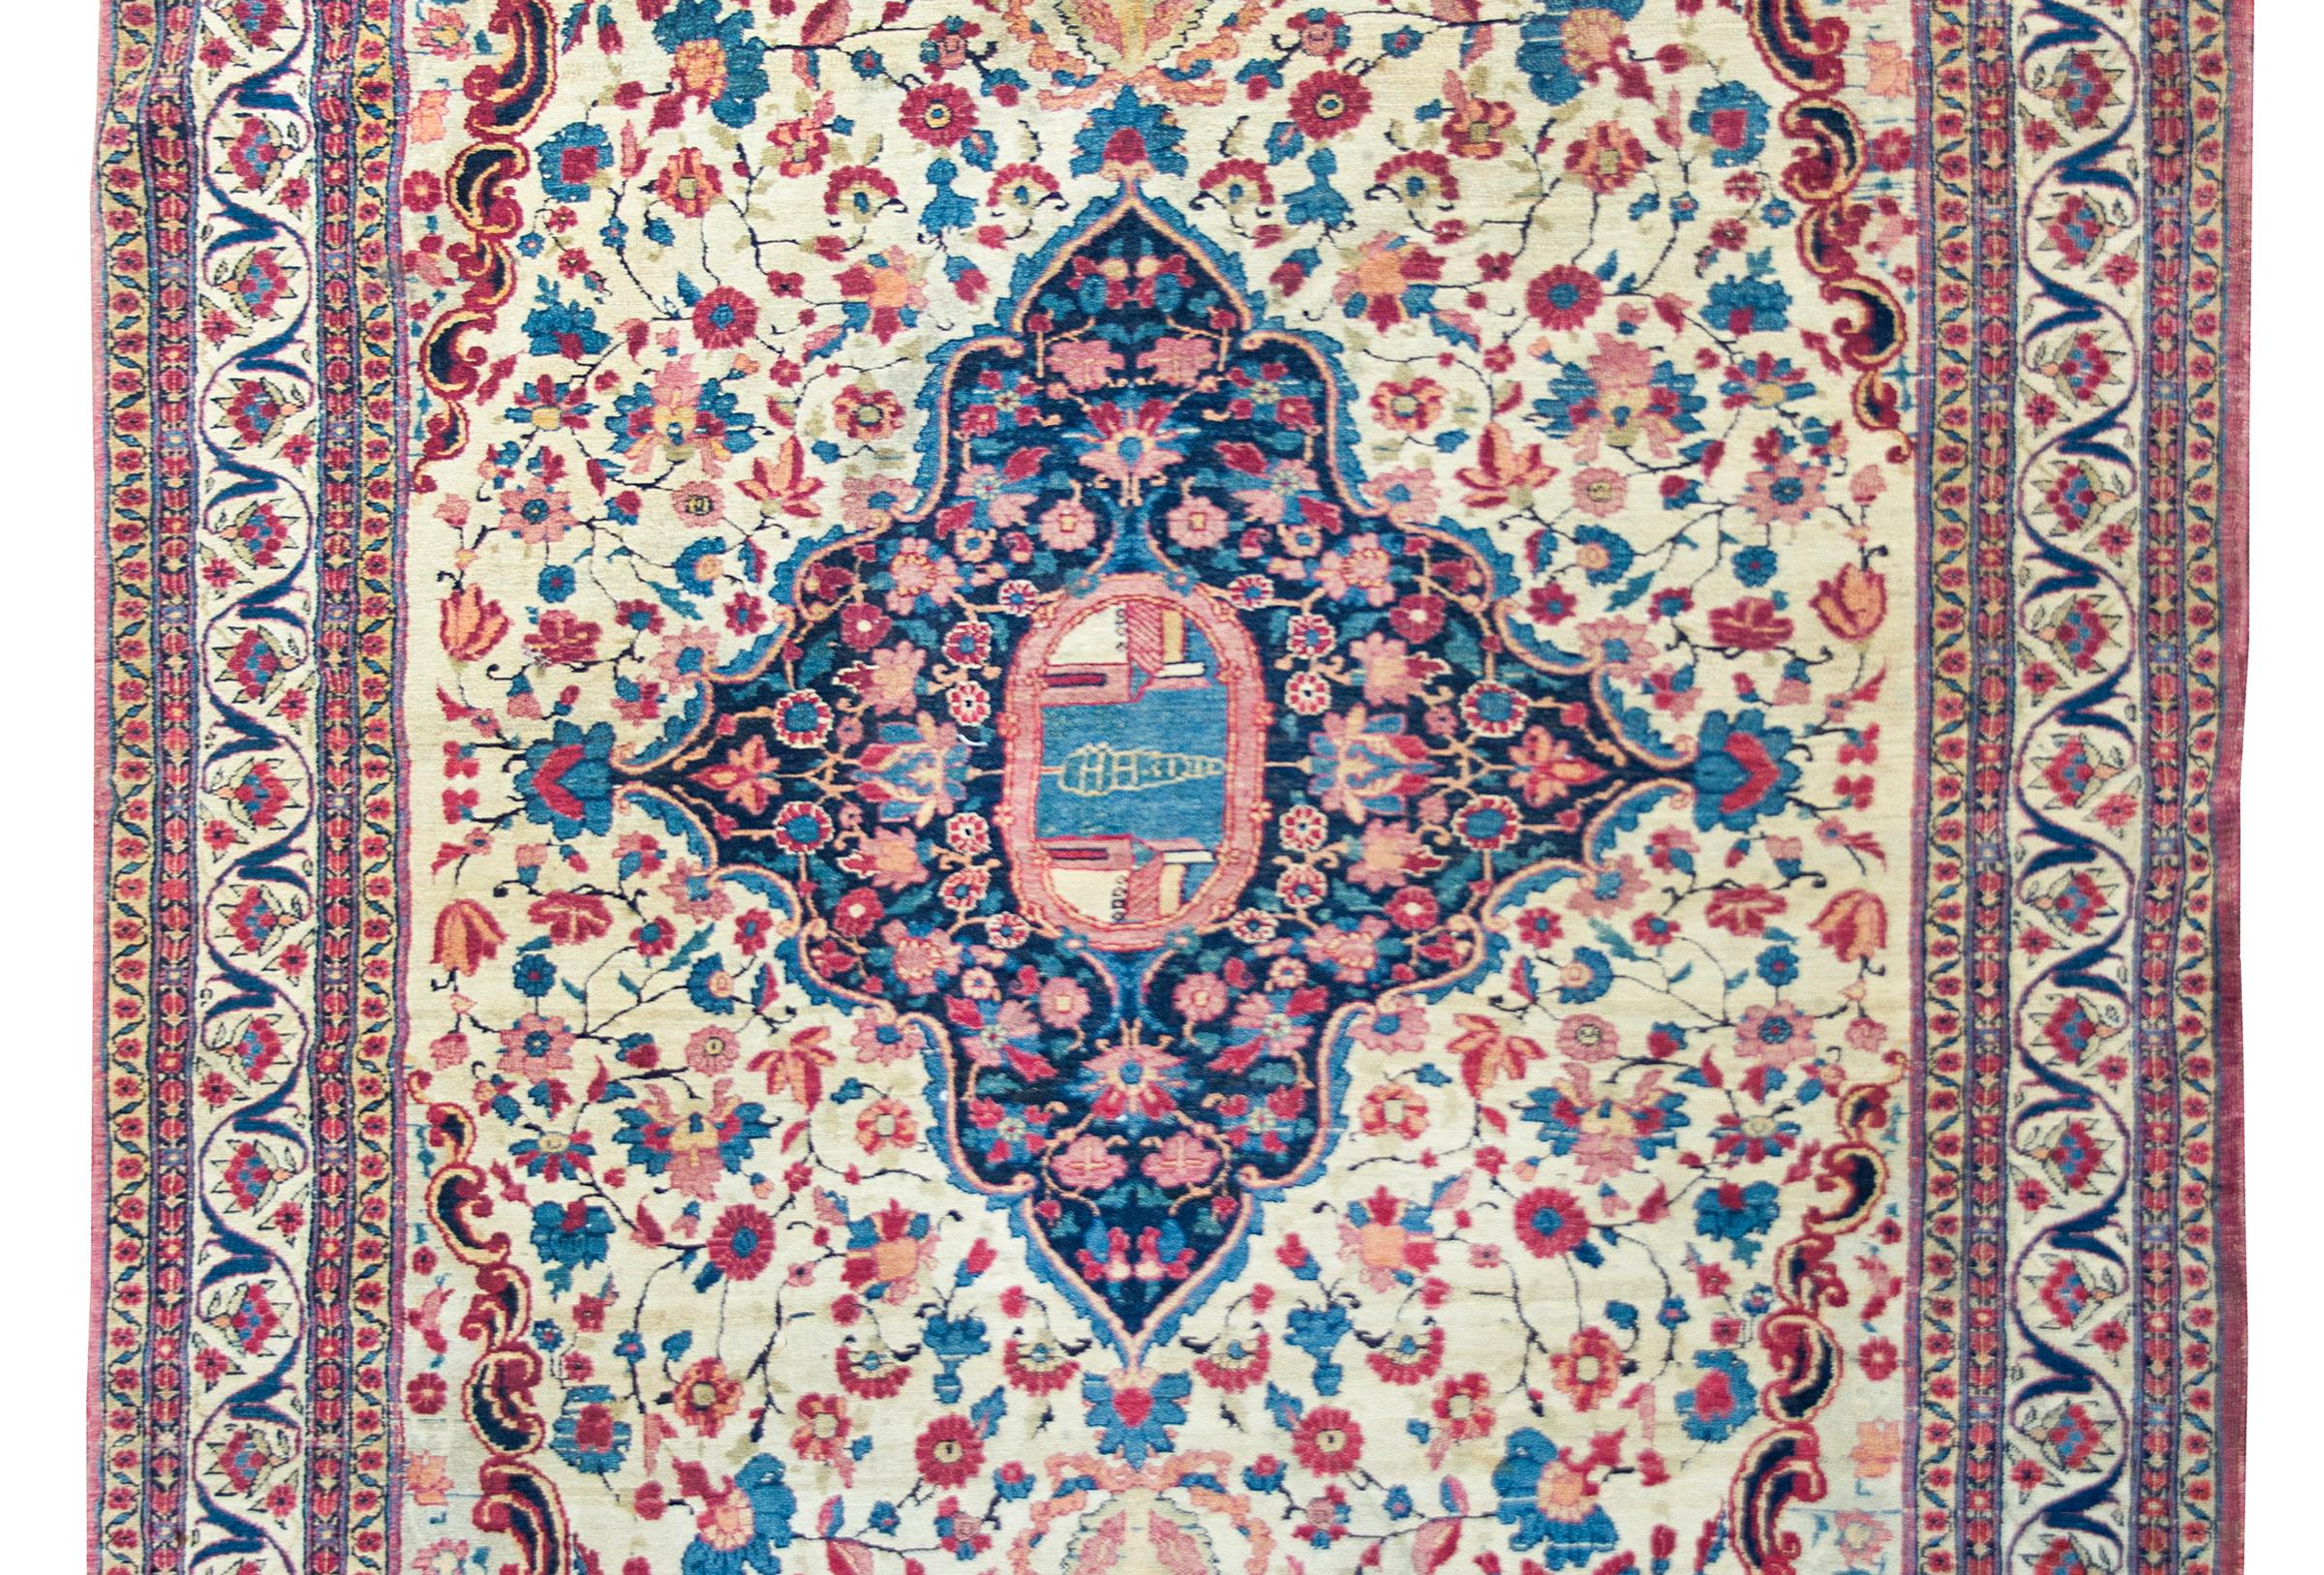 Ein unglaublicher persischer Teheran-Teppich aus dem frühen 20. Jahrhundert mit einem großen zentralen Medaillon mit einer einzelnen Zypresse zwischen zwei Gebäuden inmitten eines Blumenfeldes, umgeben von einer breiten Bordüre mit stilisierten